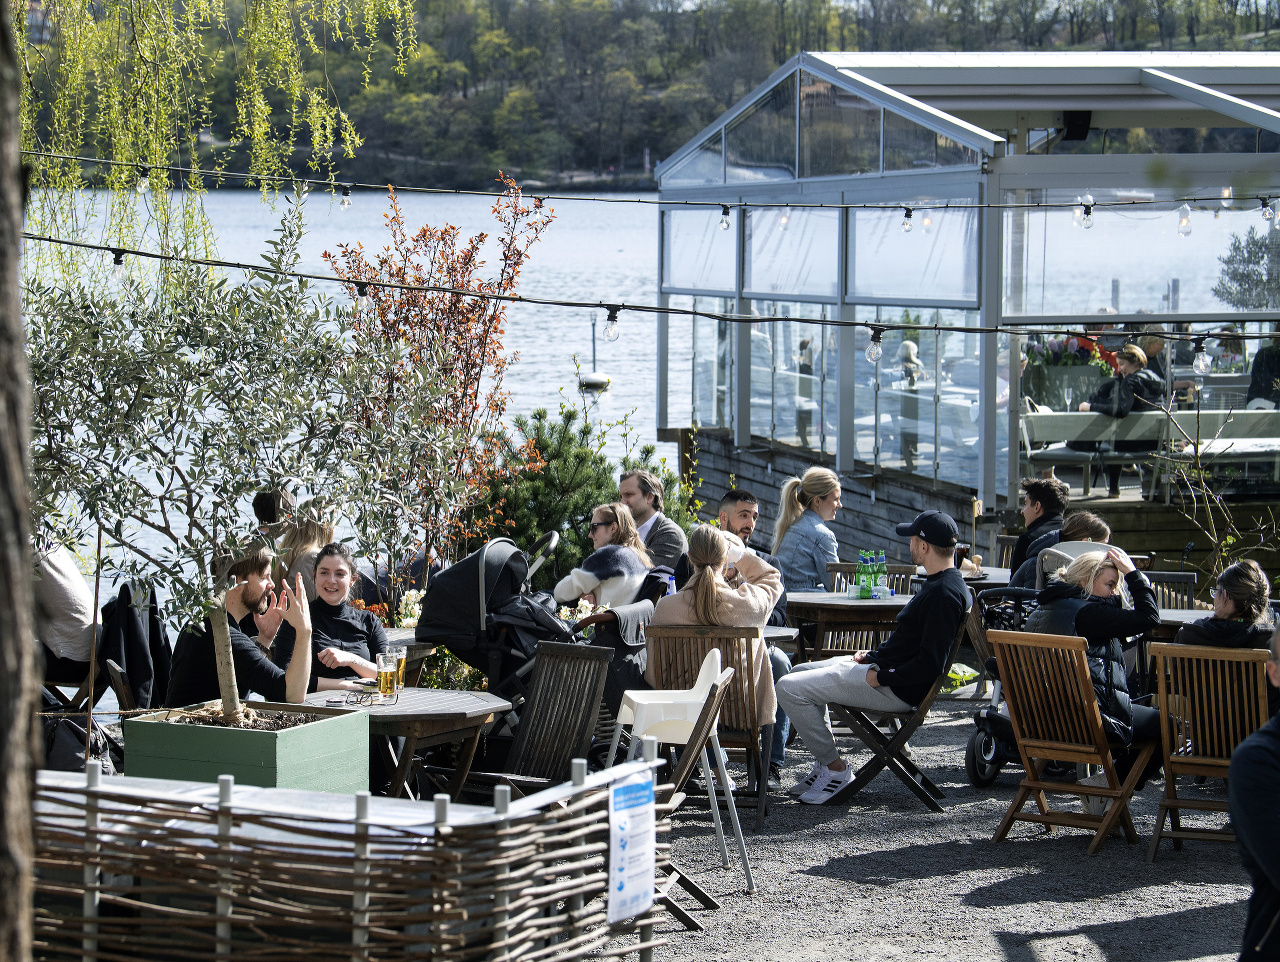 Ľudia pijú a jedia na terase reštaurácie v Štokholme počas koronavírusovej pandémie.